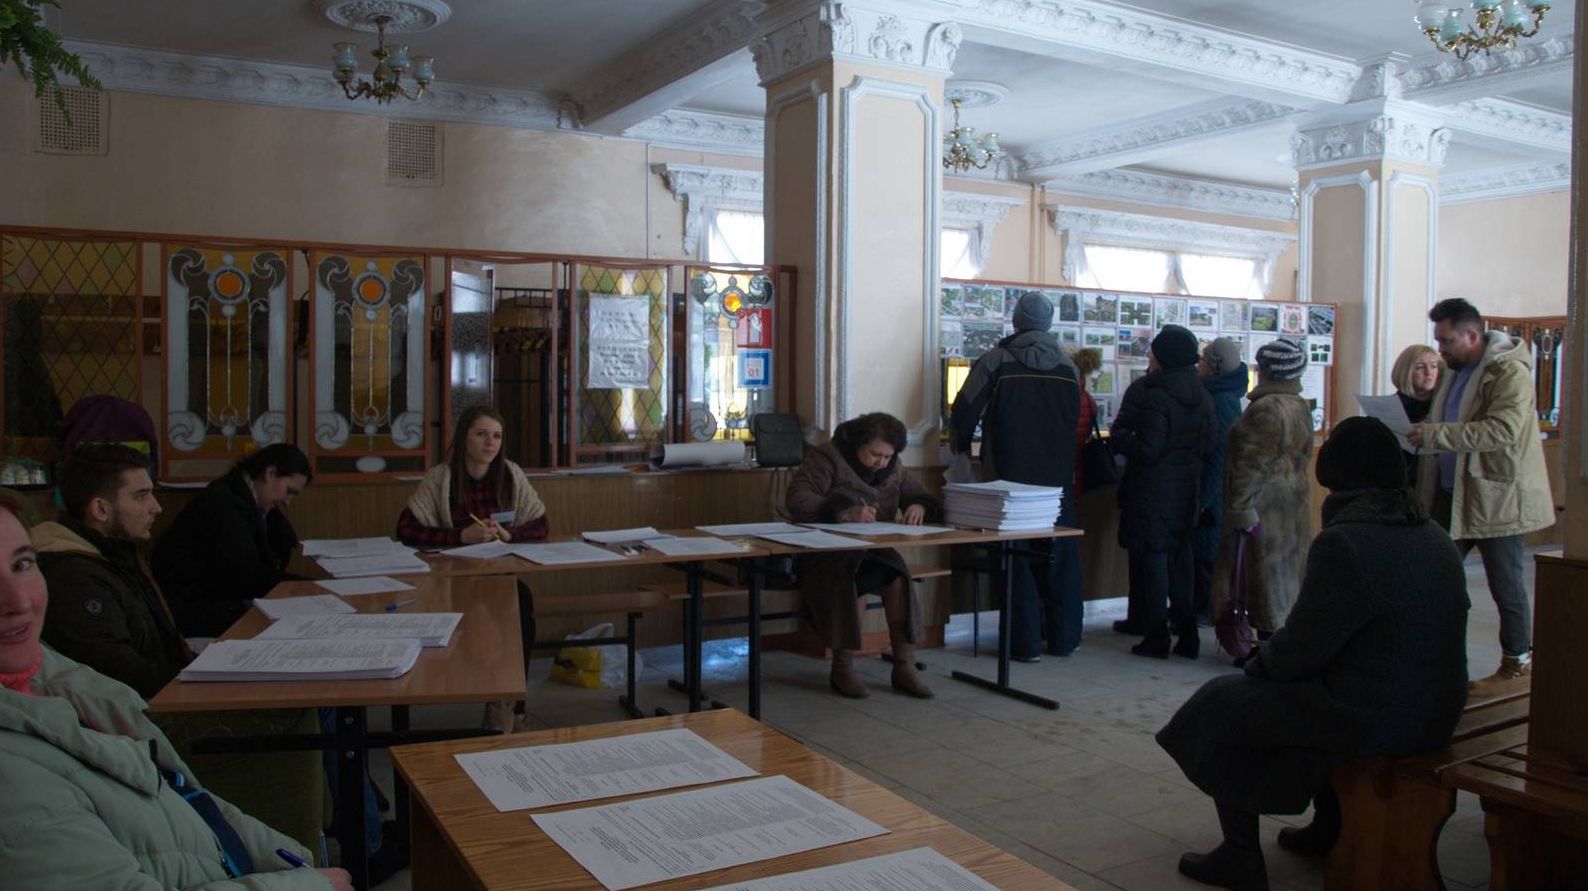 Участок, где проводится рейтинговое голосование по вопросам благоустройства города Брянска.